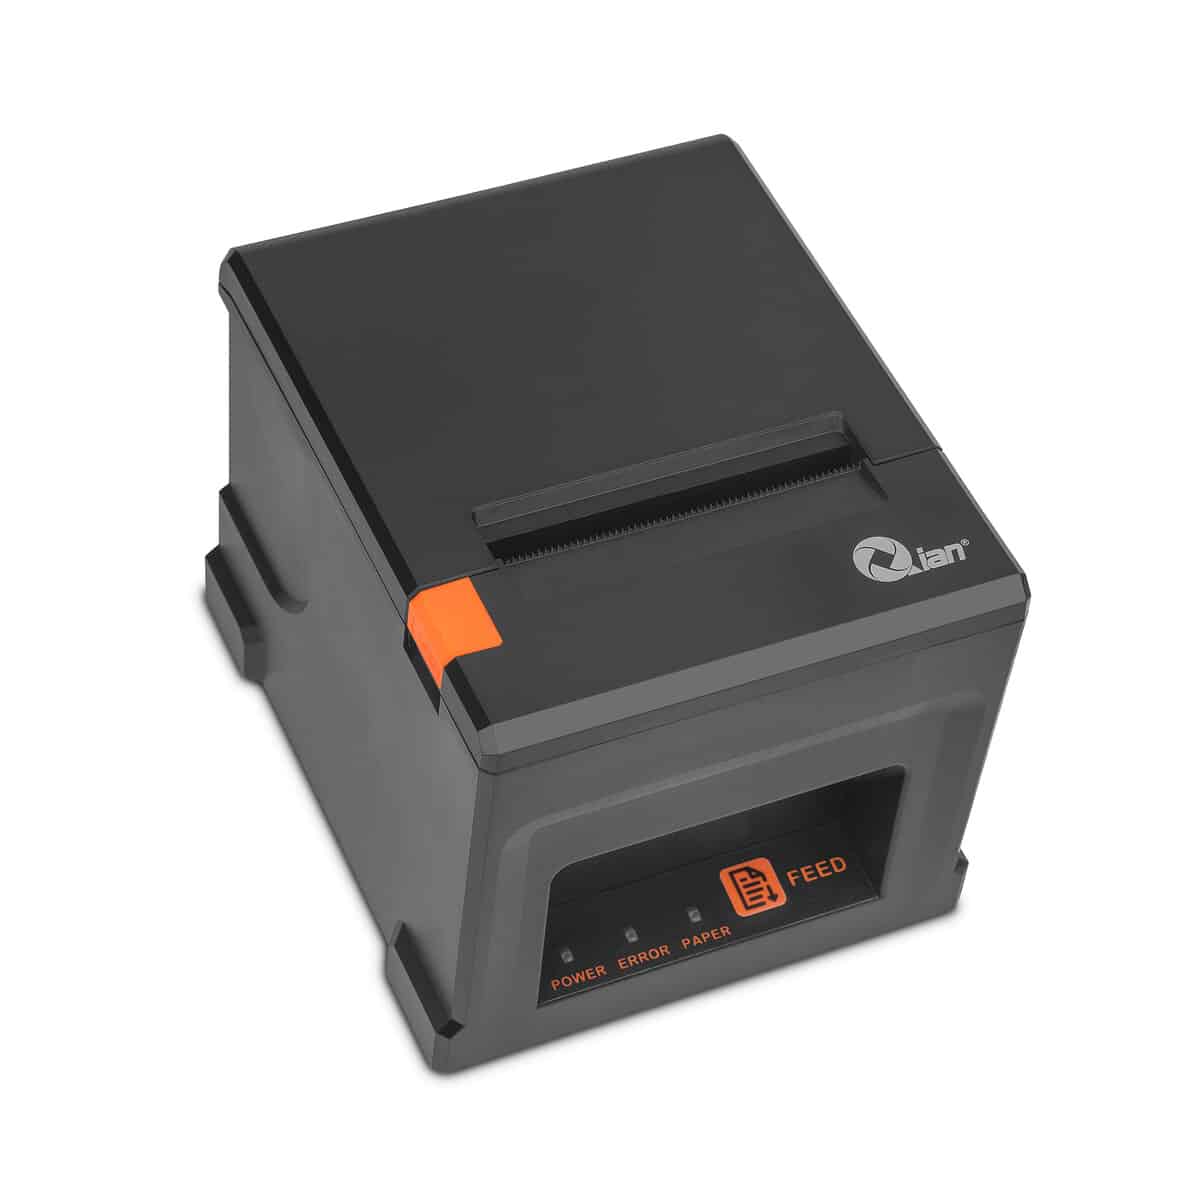 Mini Printer Qian T  rmica 80Mm 220Mm S Usb Lan Cor Aut  Qop T80Ul Ri 02  - NULL